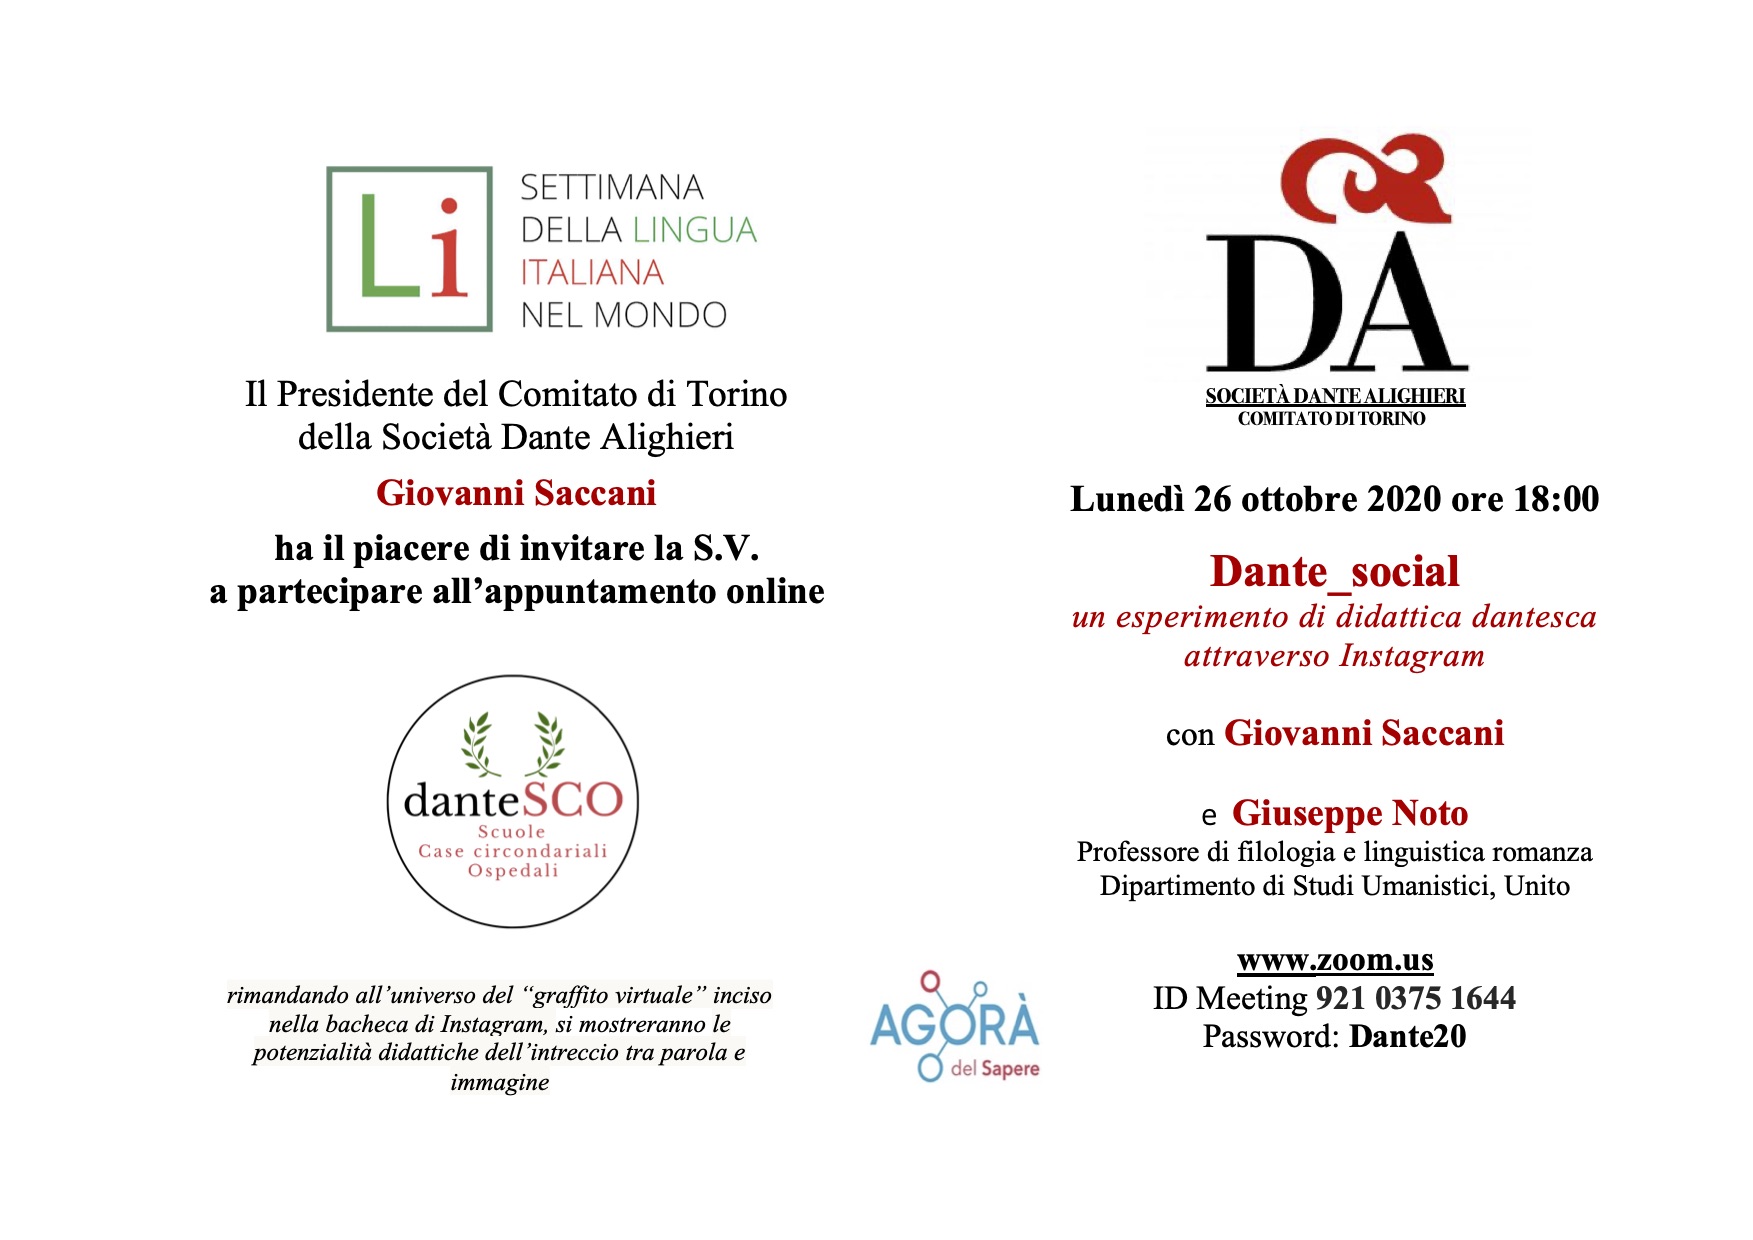 26/10/2020 Dante_social. Per la Settimana della Lingua Italiana nel mondo